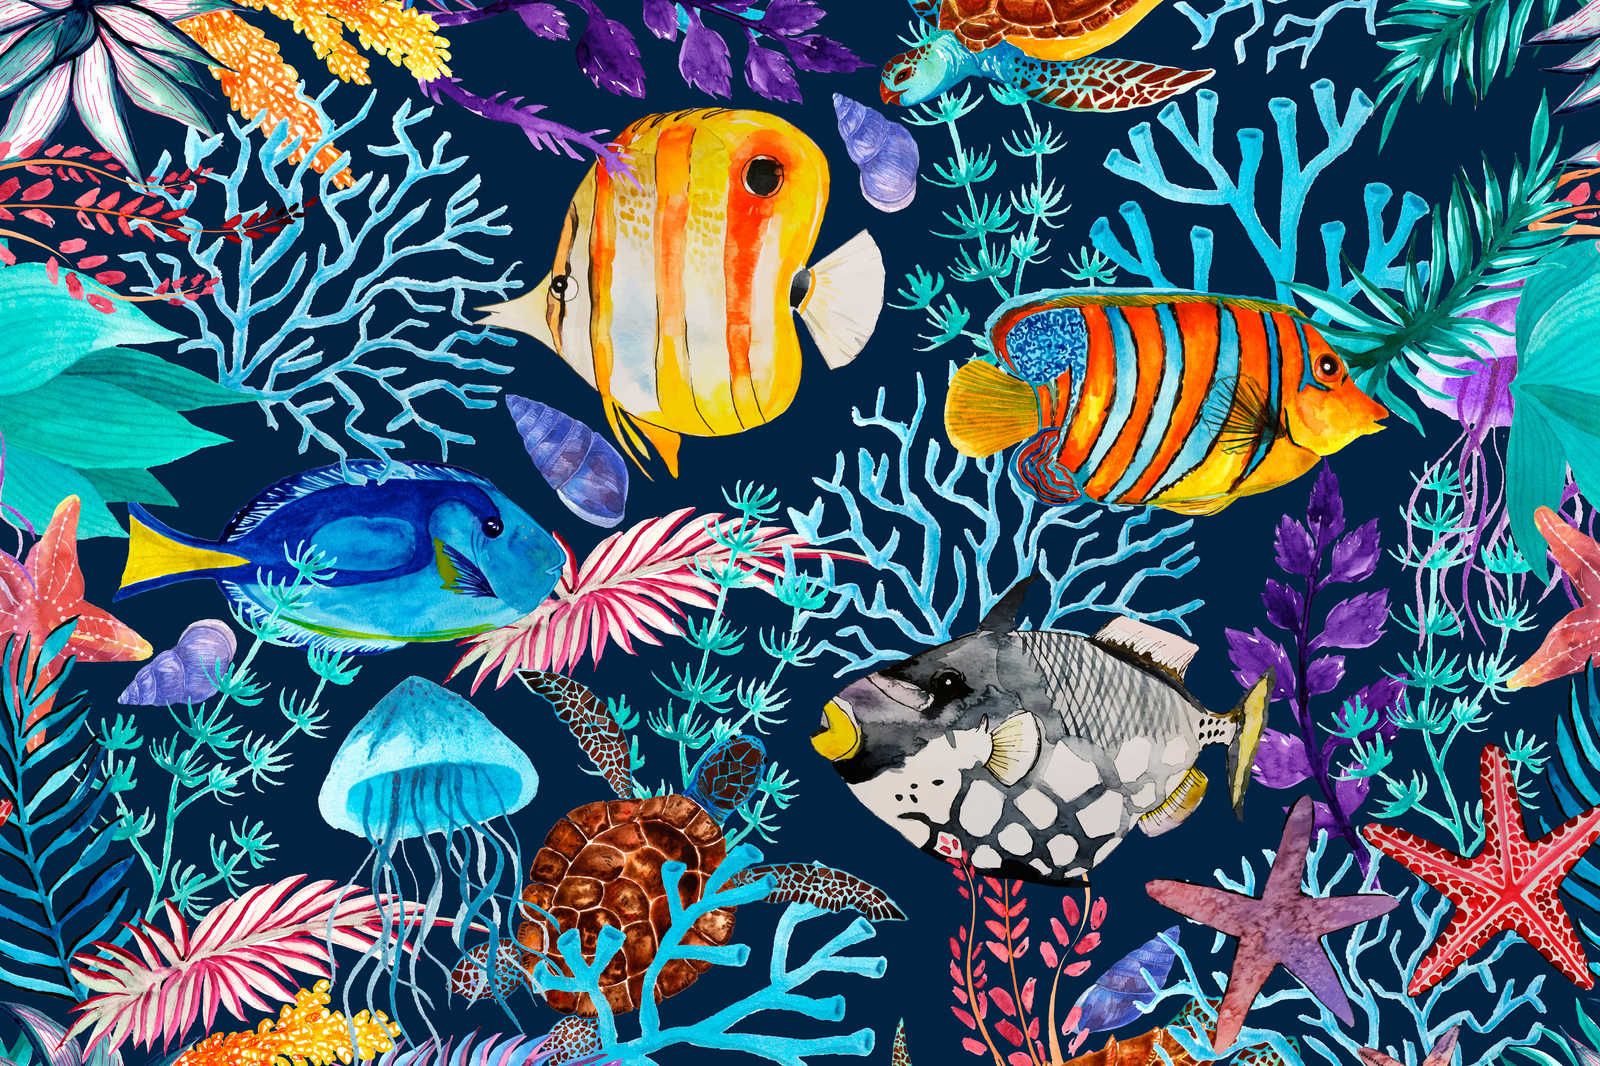             Toile sous-marine avec poissons colorés & étoiles de mer - 0,90 m x 0,60 m
        